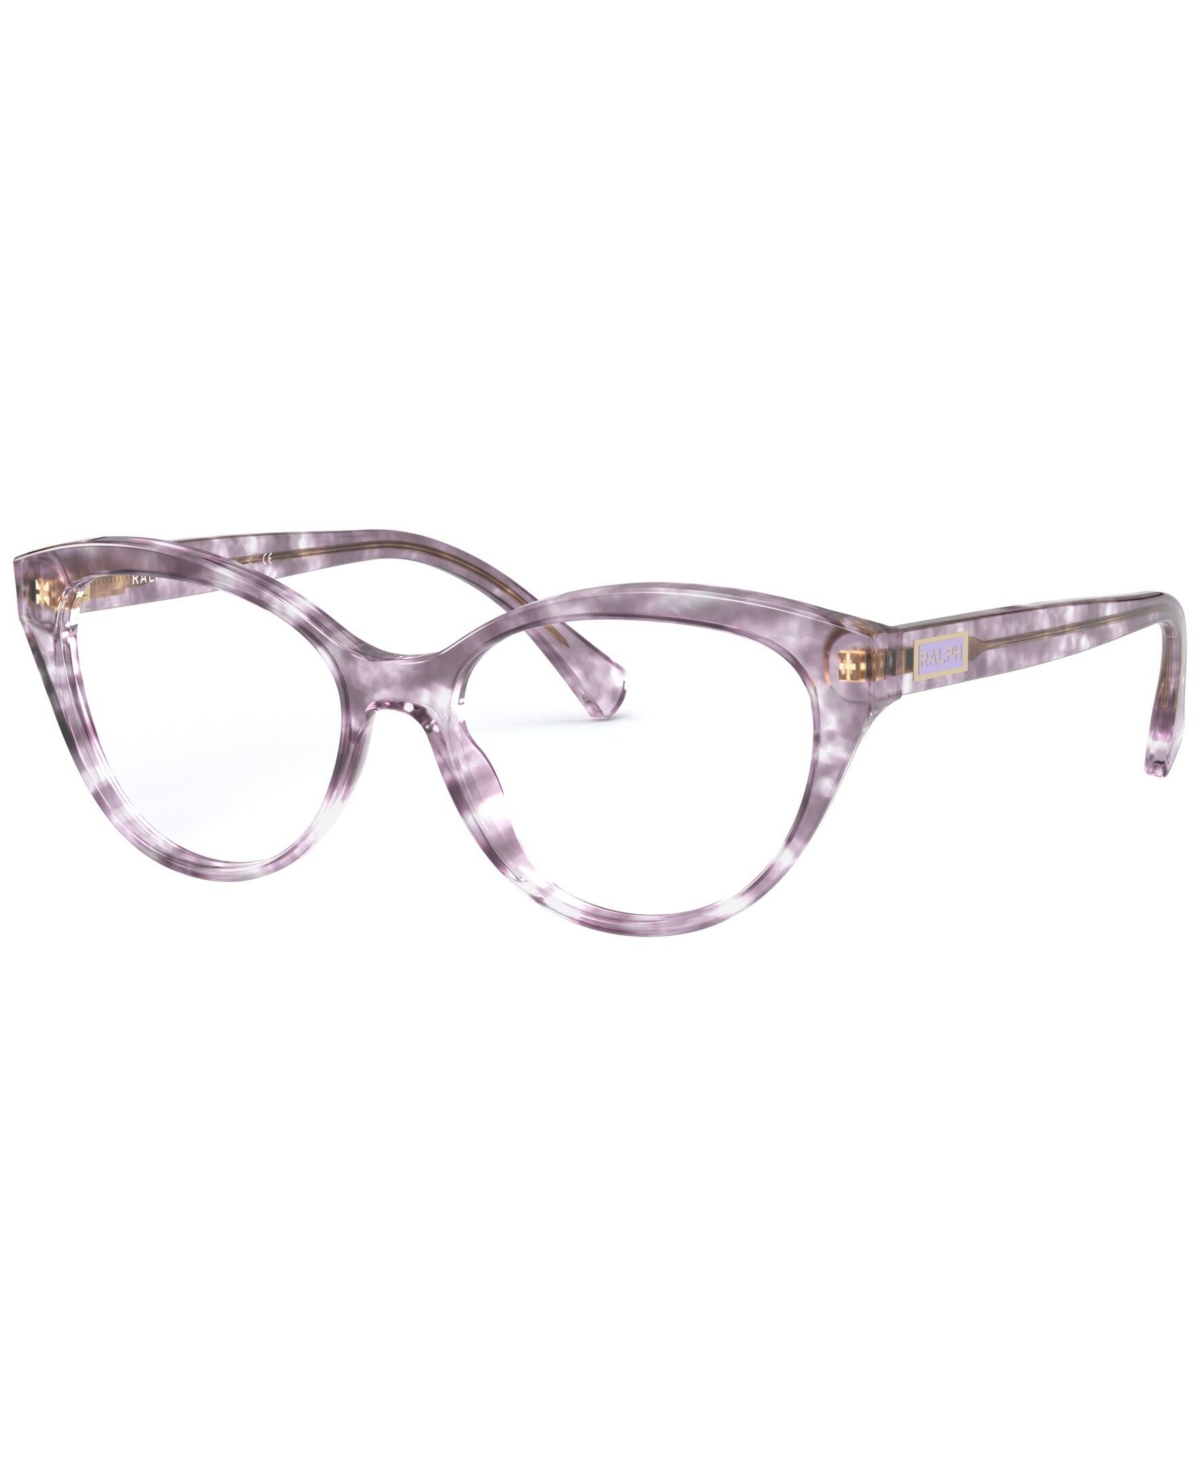 Ralph Lauren RA7116 Women's Butterfly Eyeglasses - Lilac